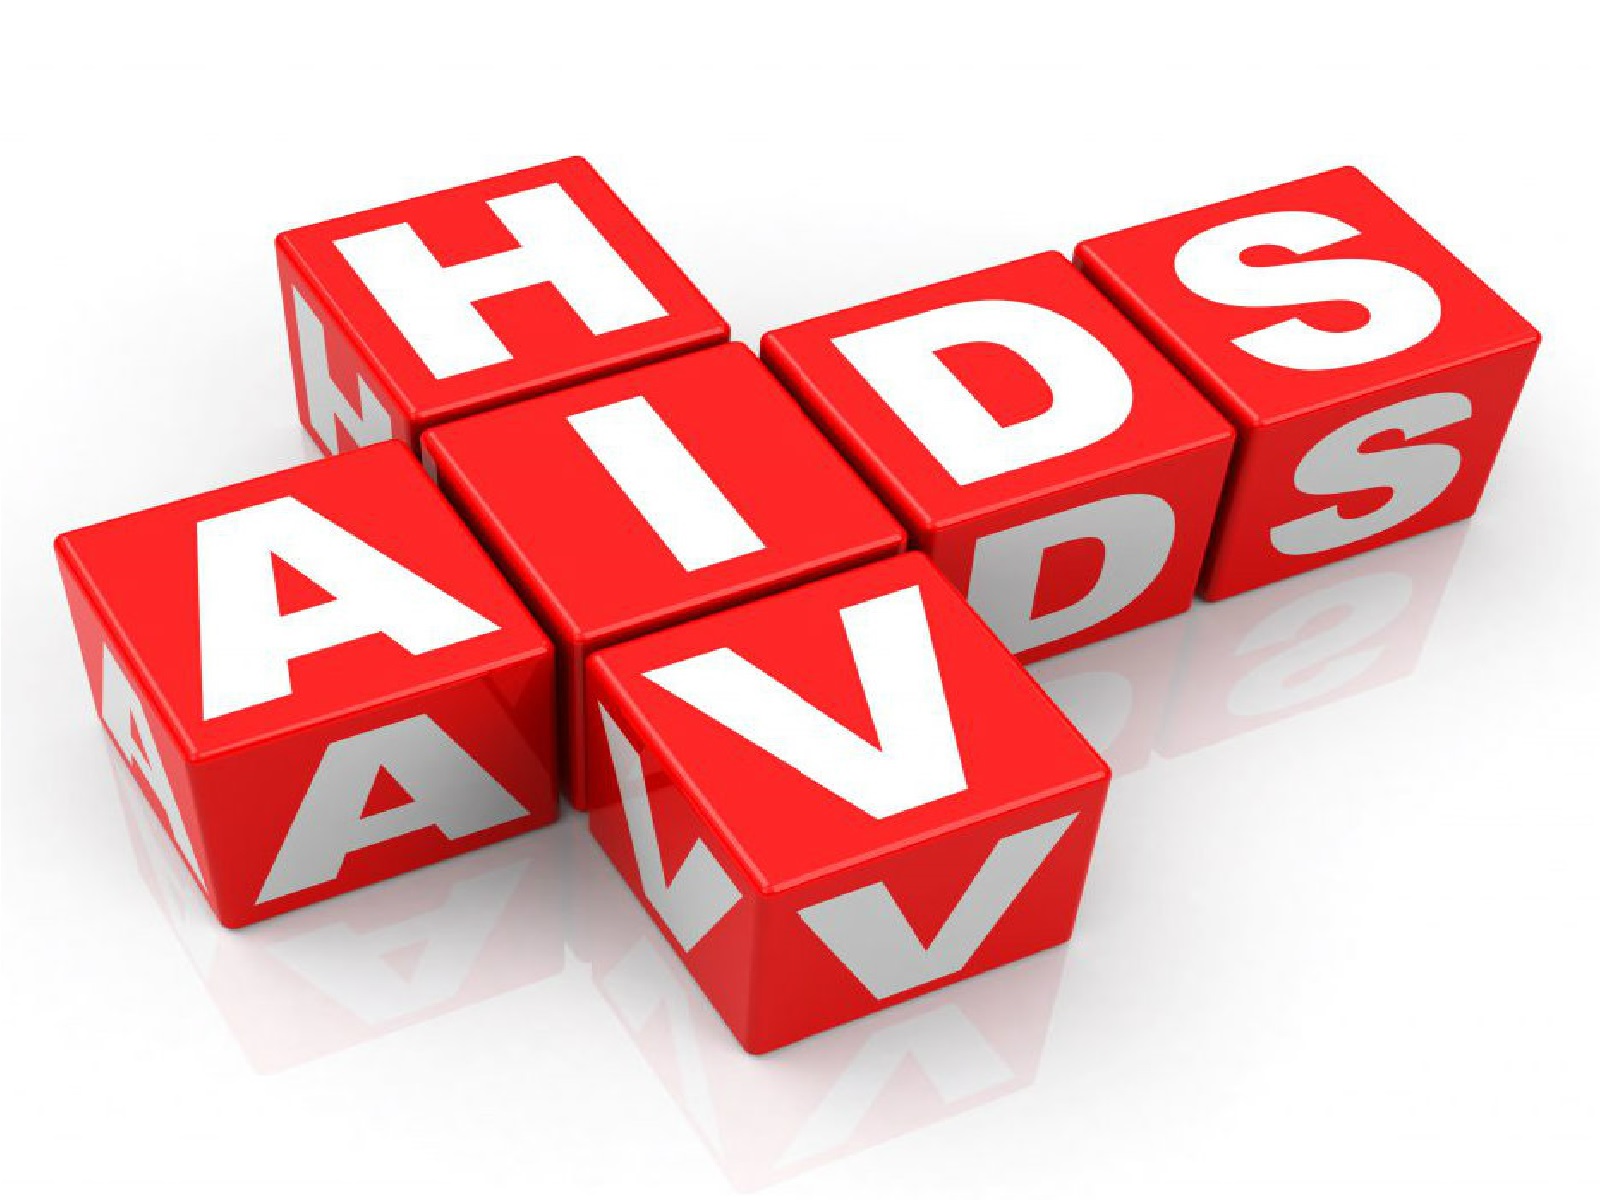 کدام یک از این نشانه ها می تواند از علائم شایع ایدز باشد ؟